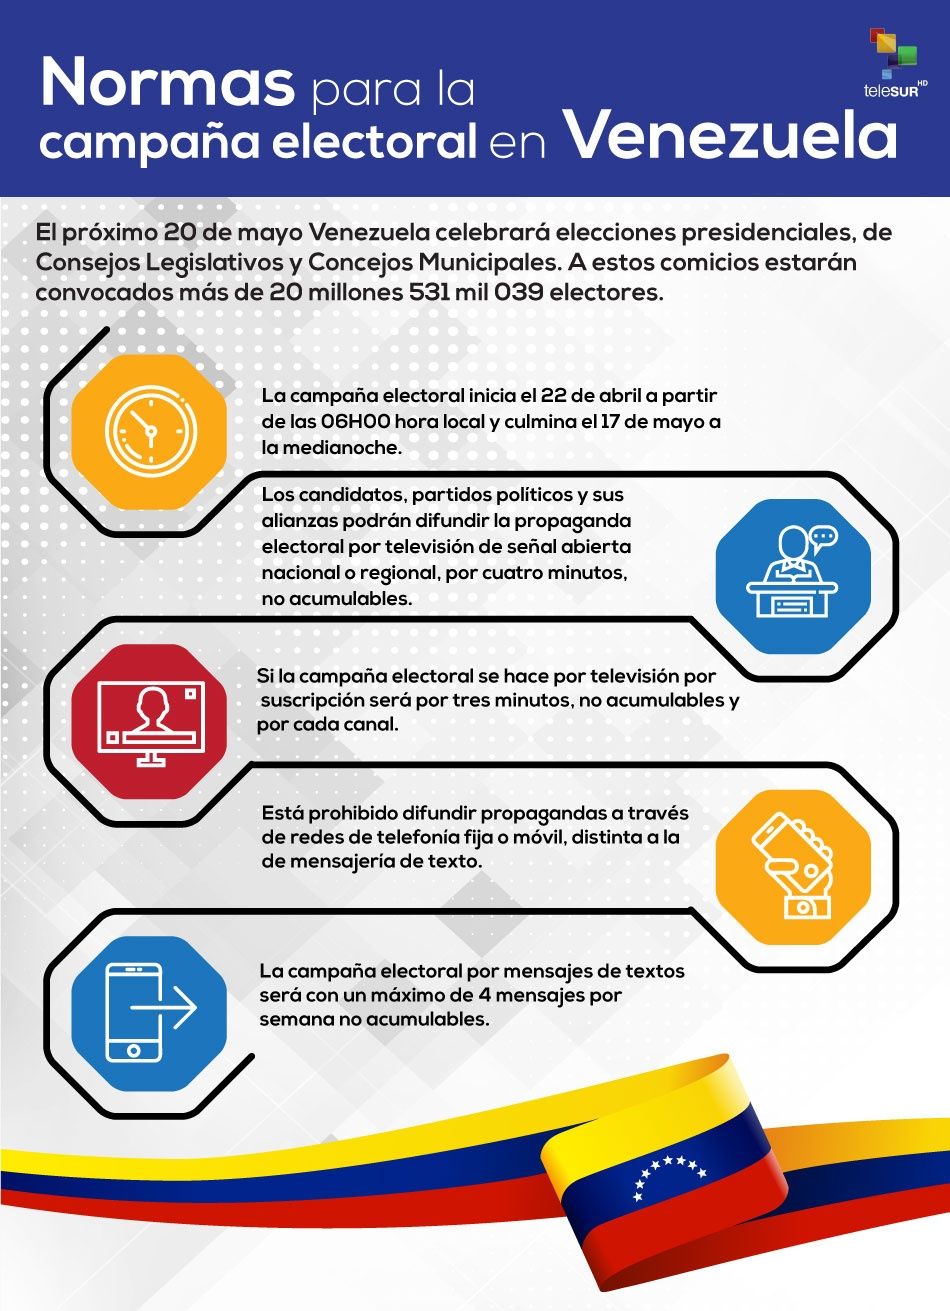 ¿Cuál es la normativa para la campaña electoral en Venezuela?